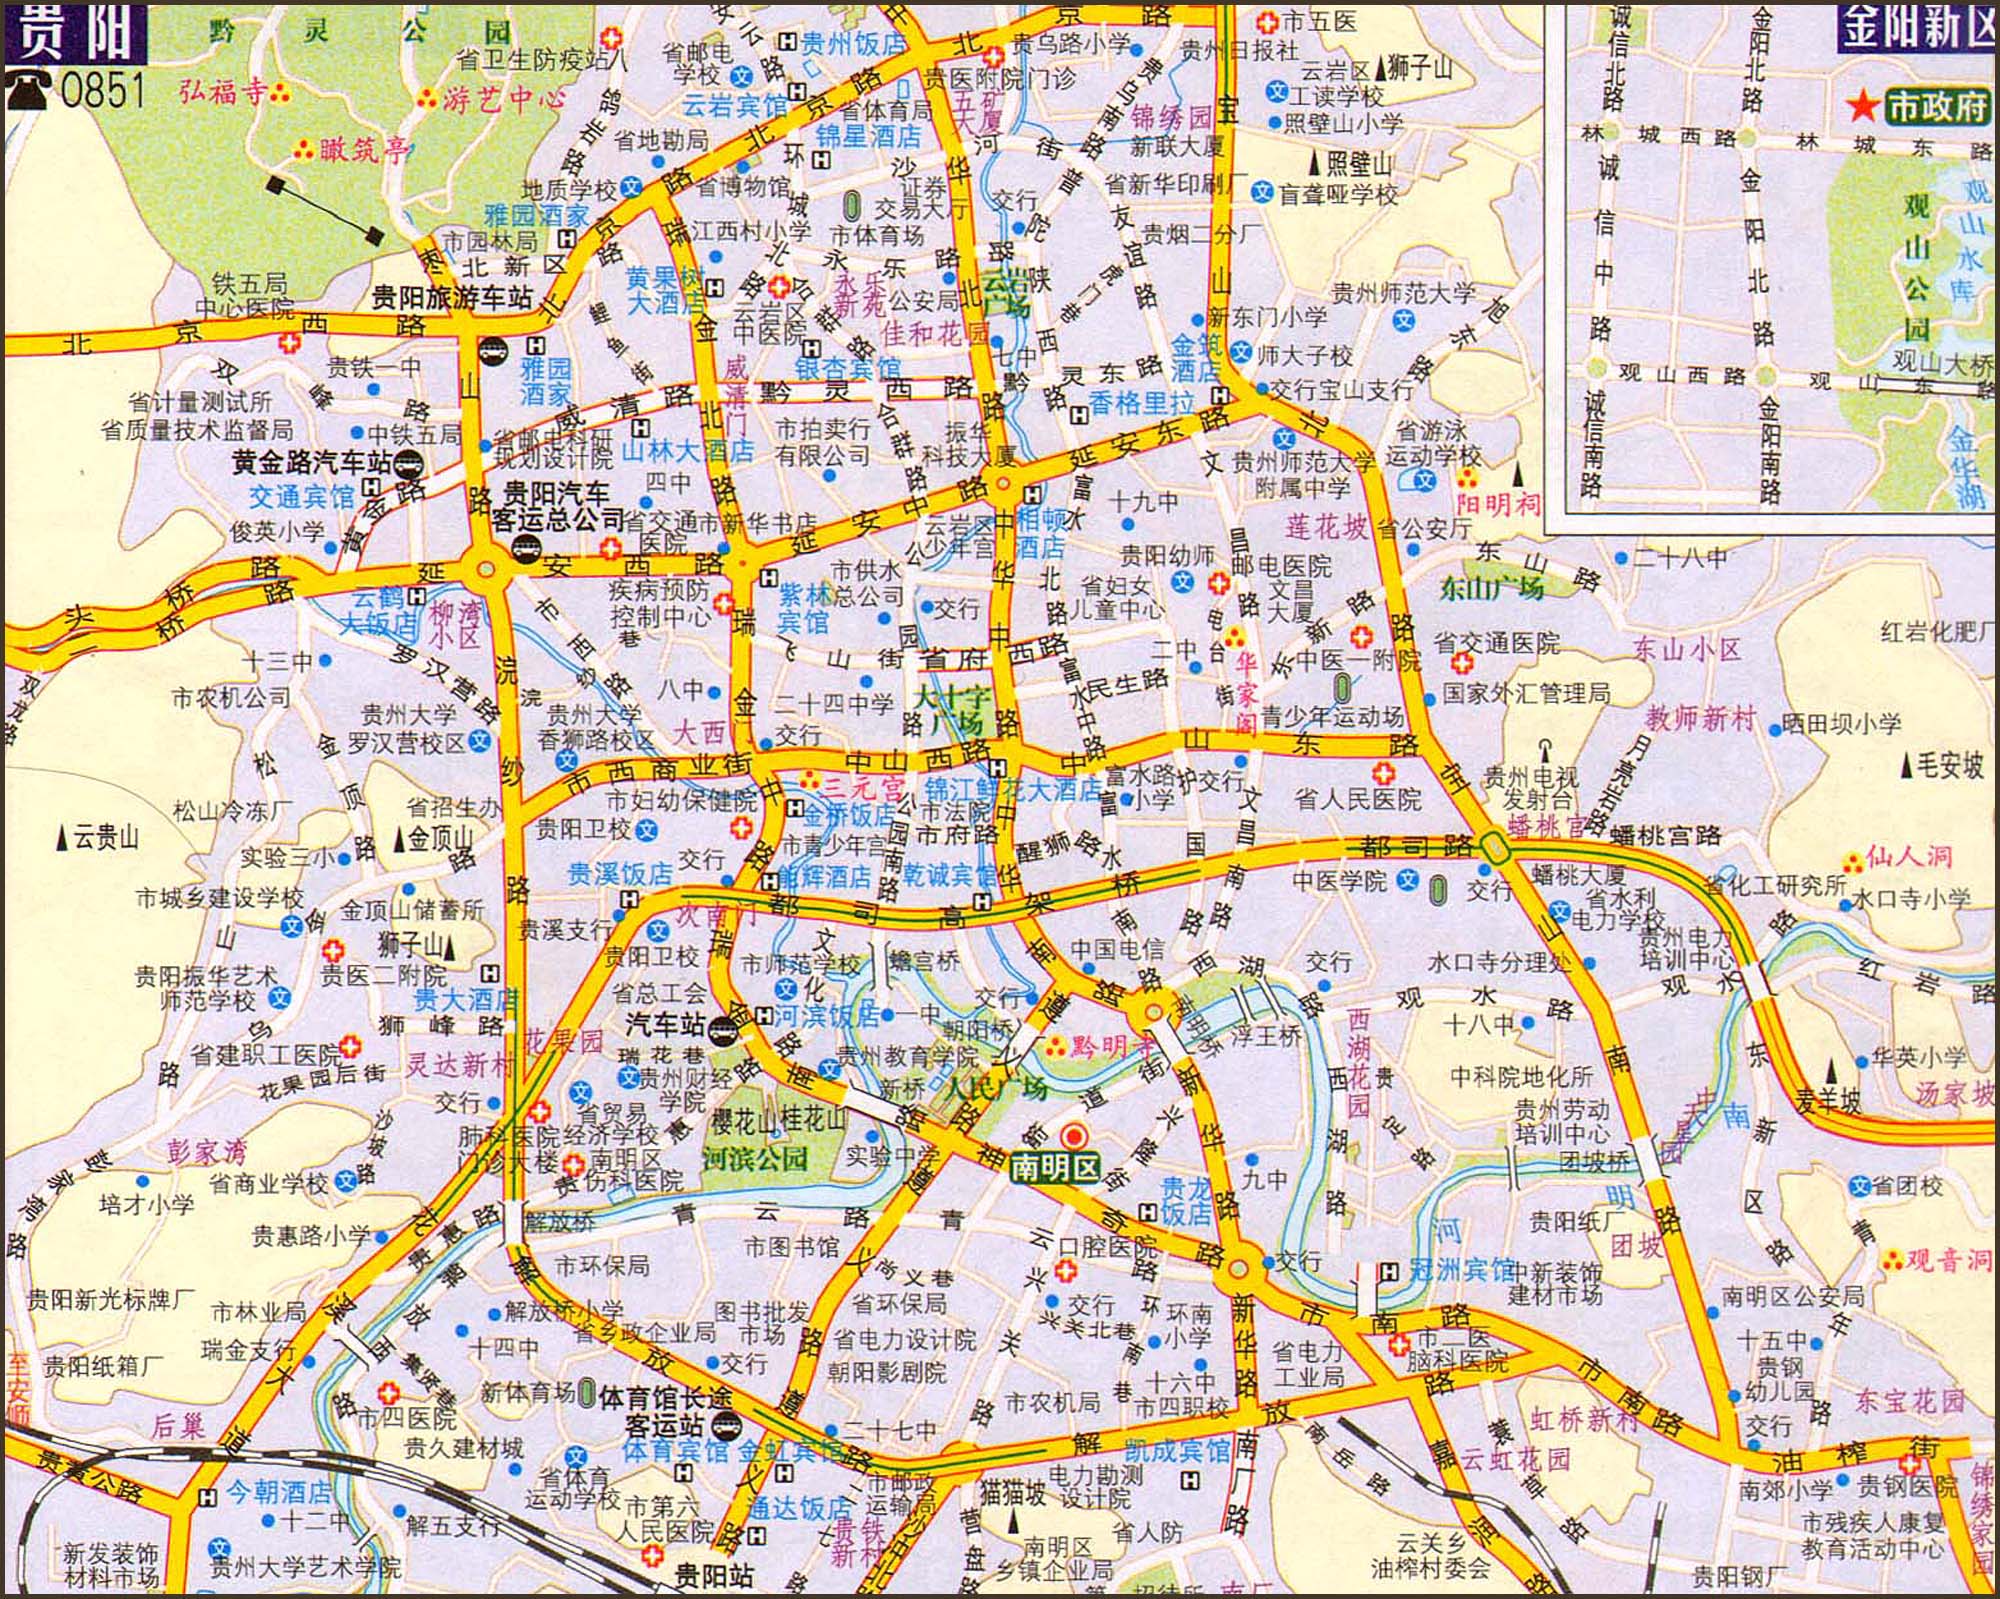 贵阳交通地图2014版_贵阳地图库; 贵阳市交通地图册; 2014中国旅游图片